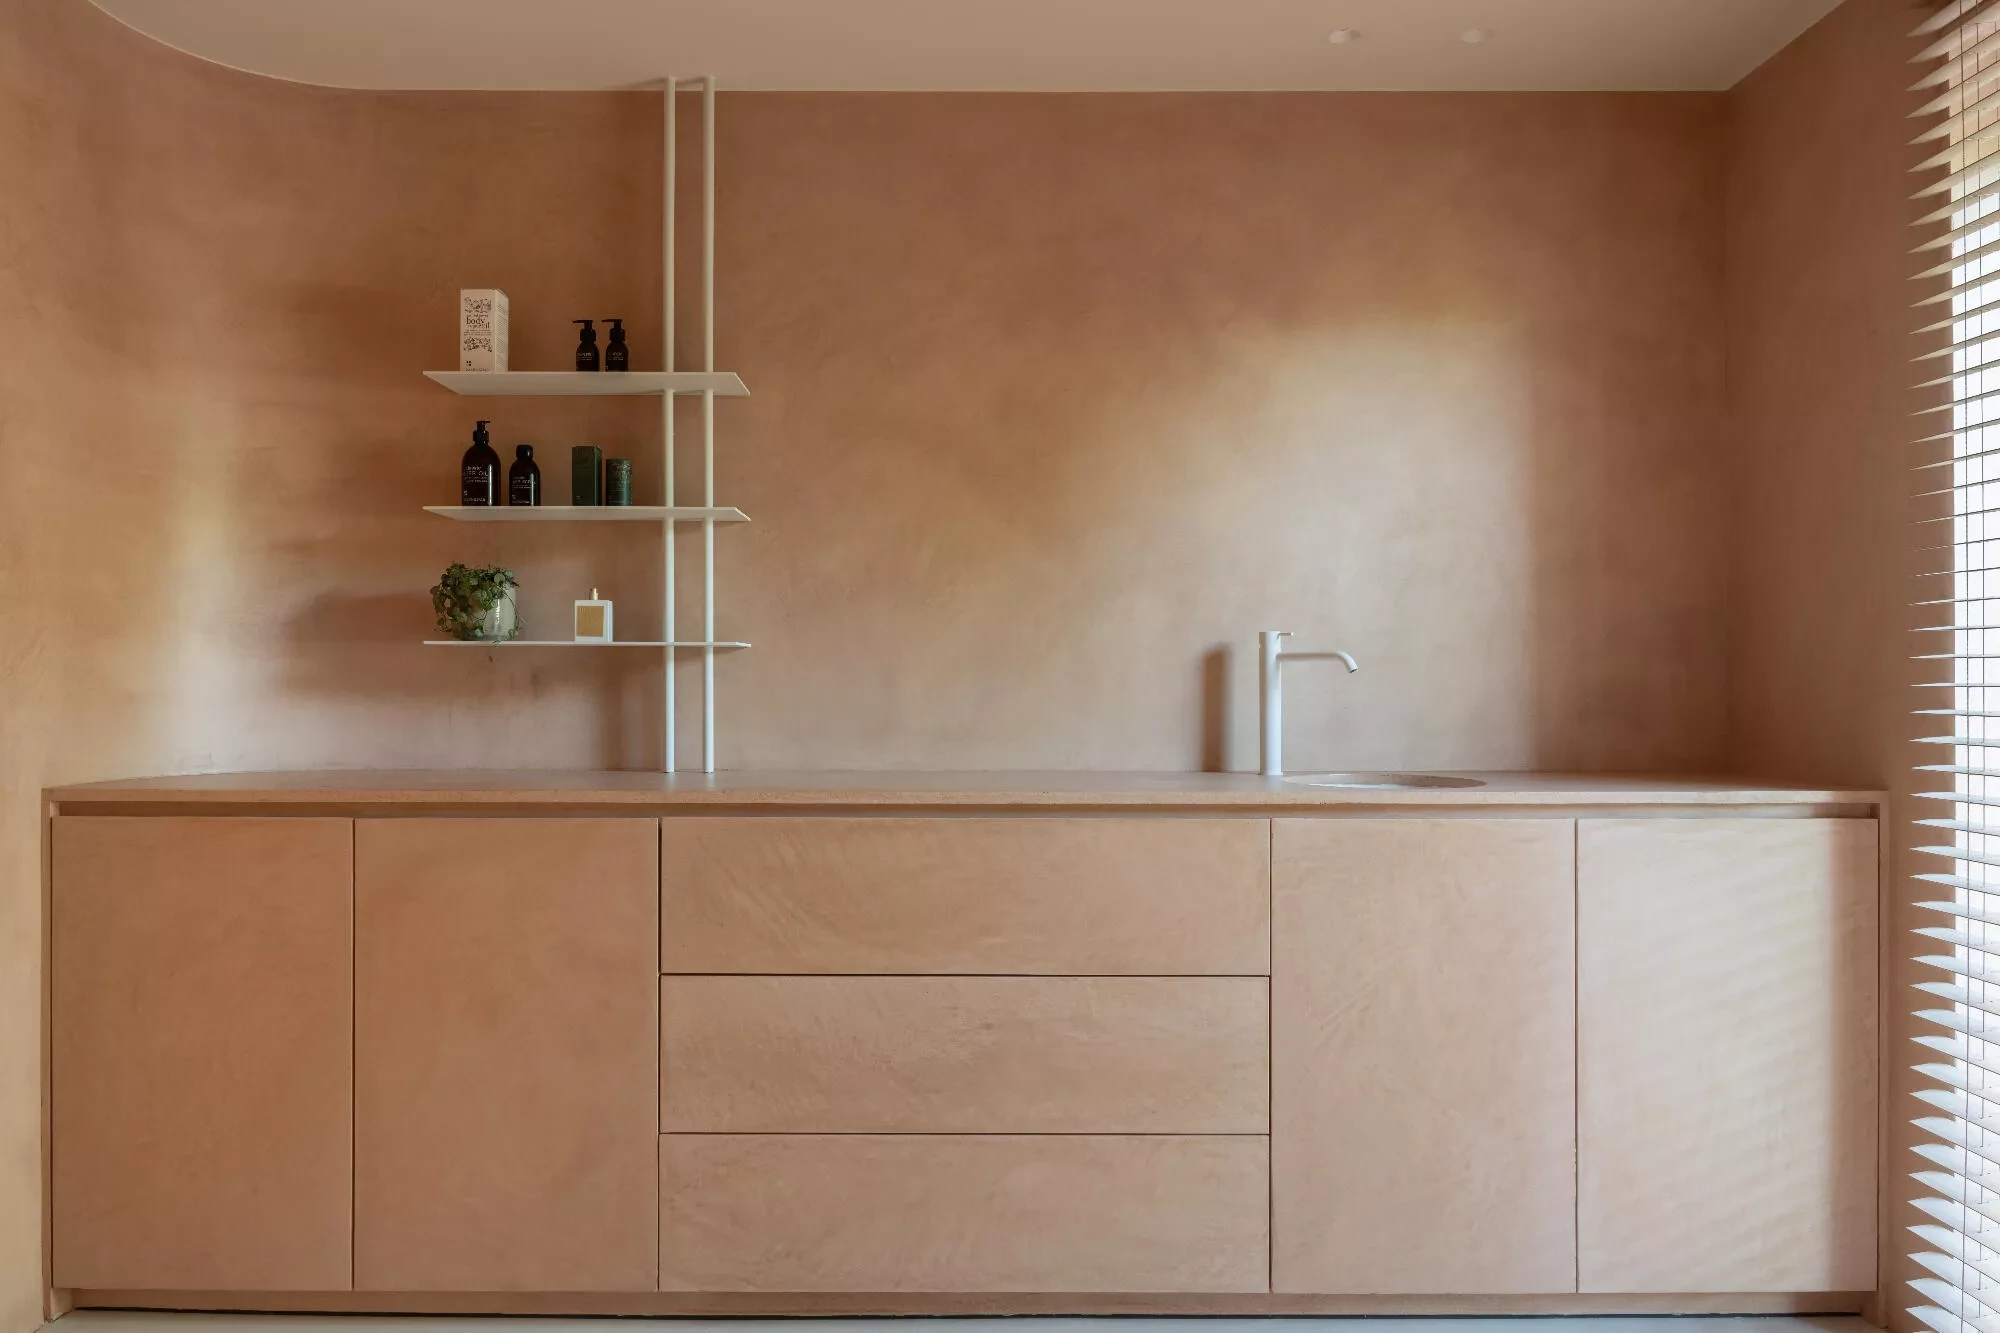 Mur et Cabinet sur mesure en Thalostuc de couleur terre cuite claire chez O-Mineral Wellness